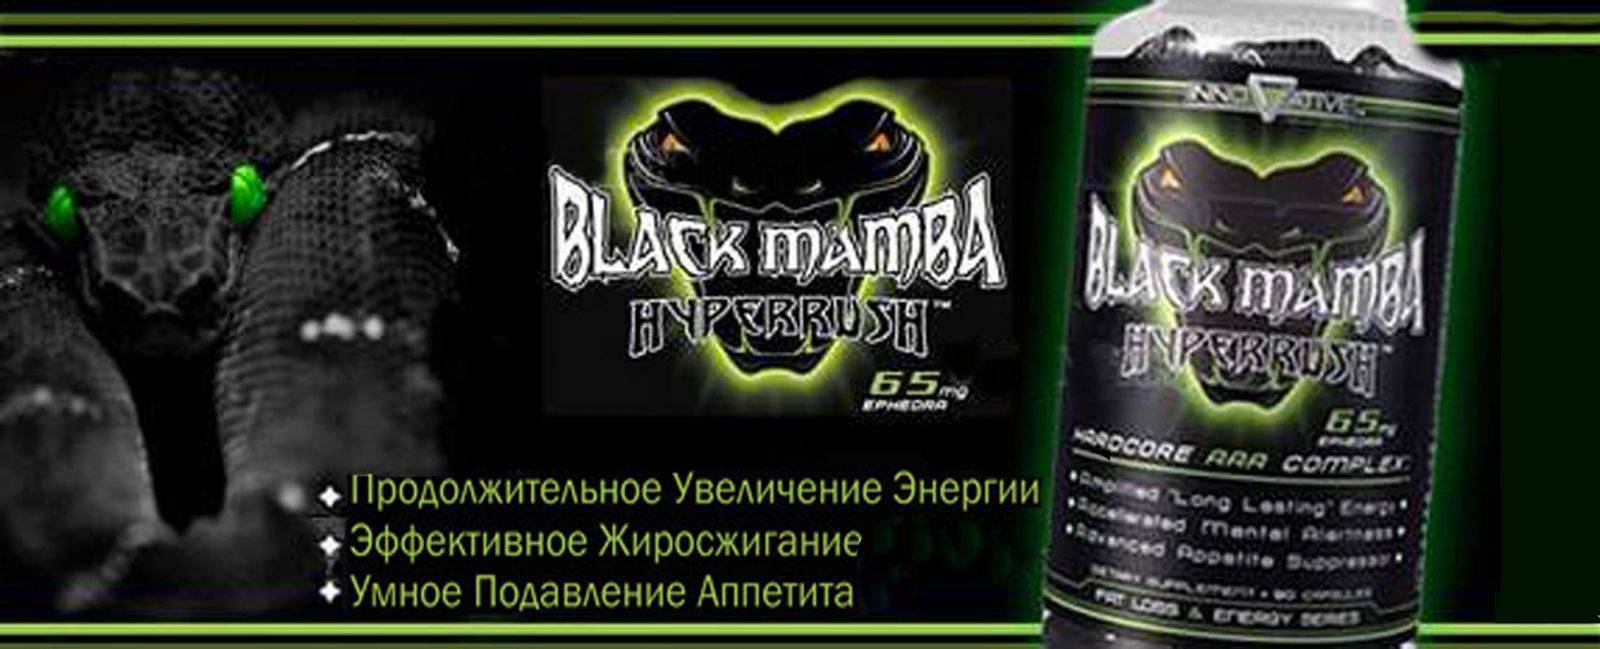 Жиросжигатель черная мамба (black mamba) — для тех, кто хочет похудеть